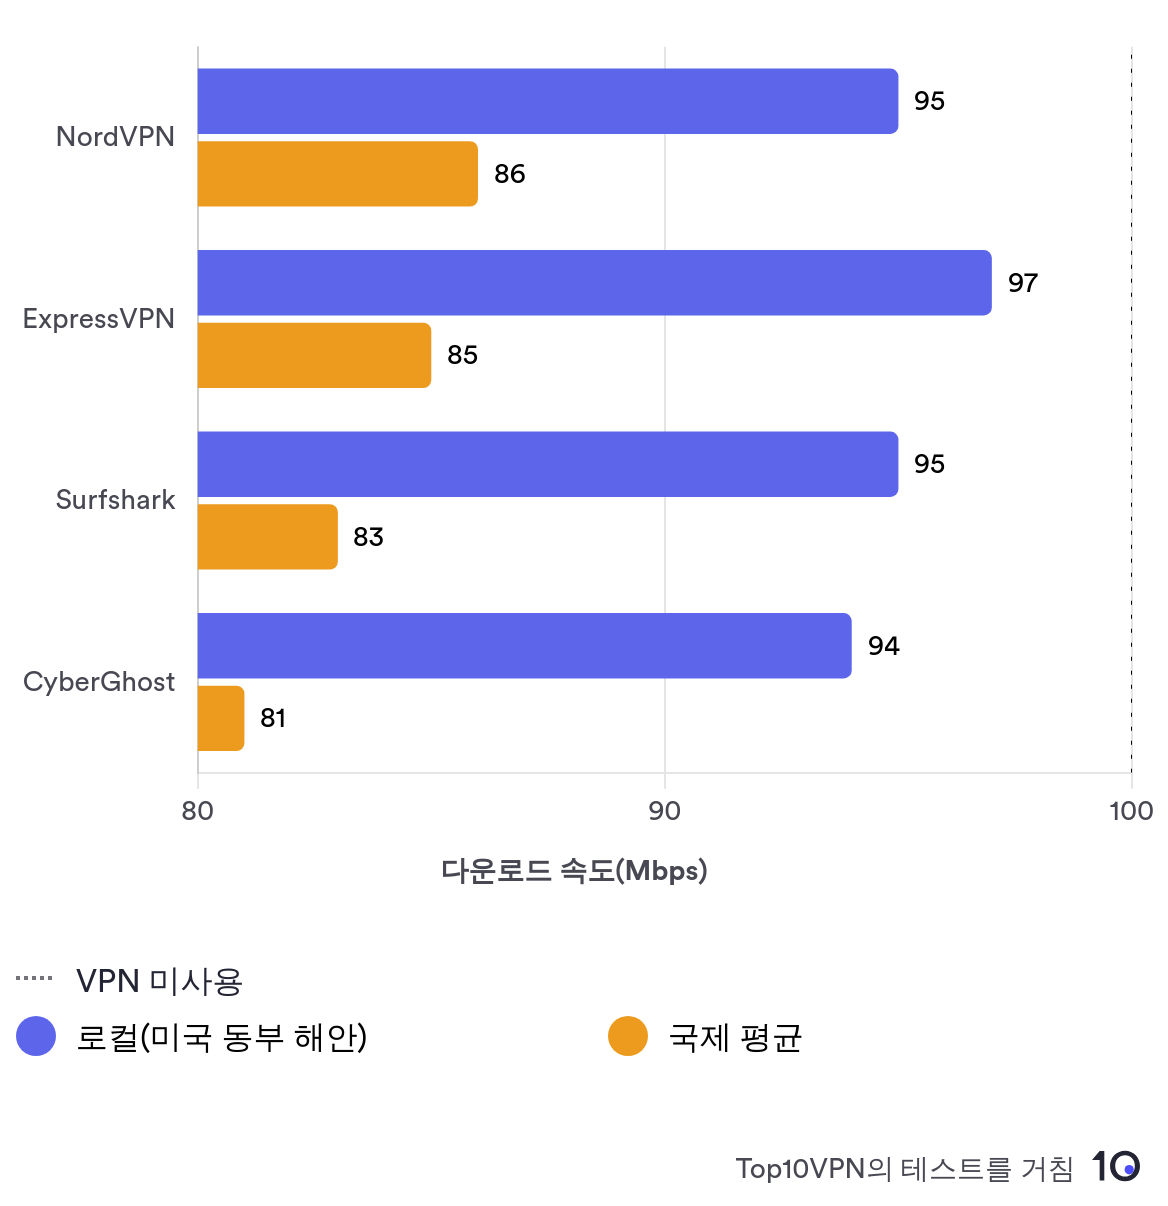 NordVPN의 속도와 다른 상위 3사 VPN의 속도를 비교한 차트